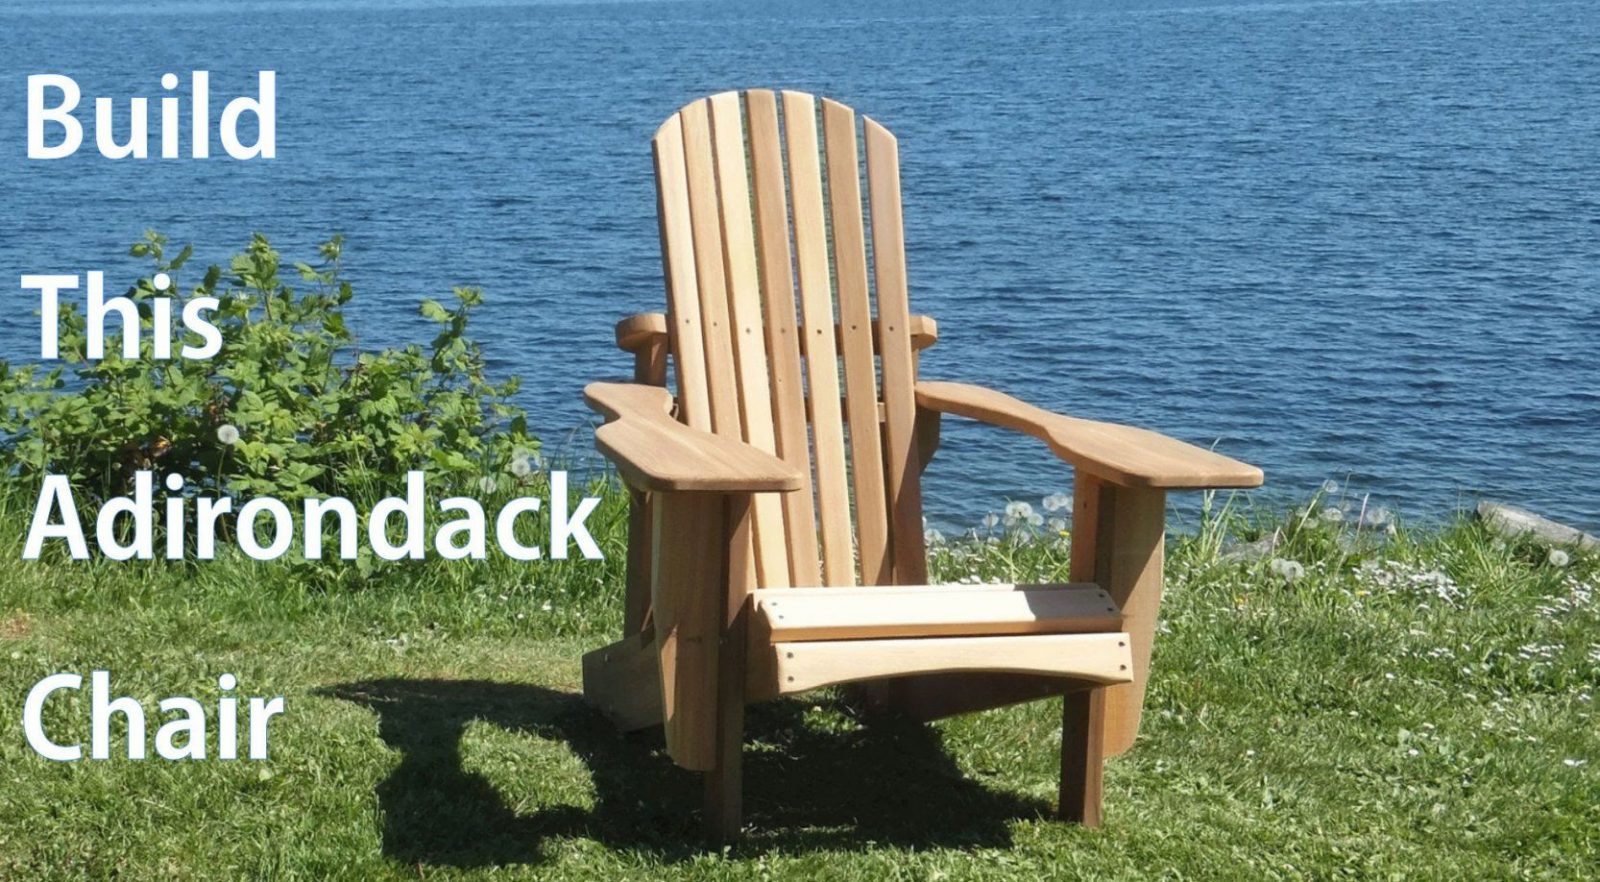 Building An Adirondack Chair  Woodworkweb  Youtube von Adirondack Chair Selber Bauen Bild